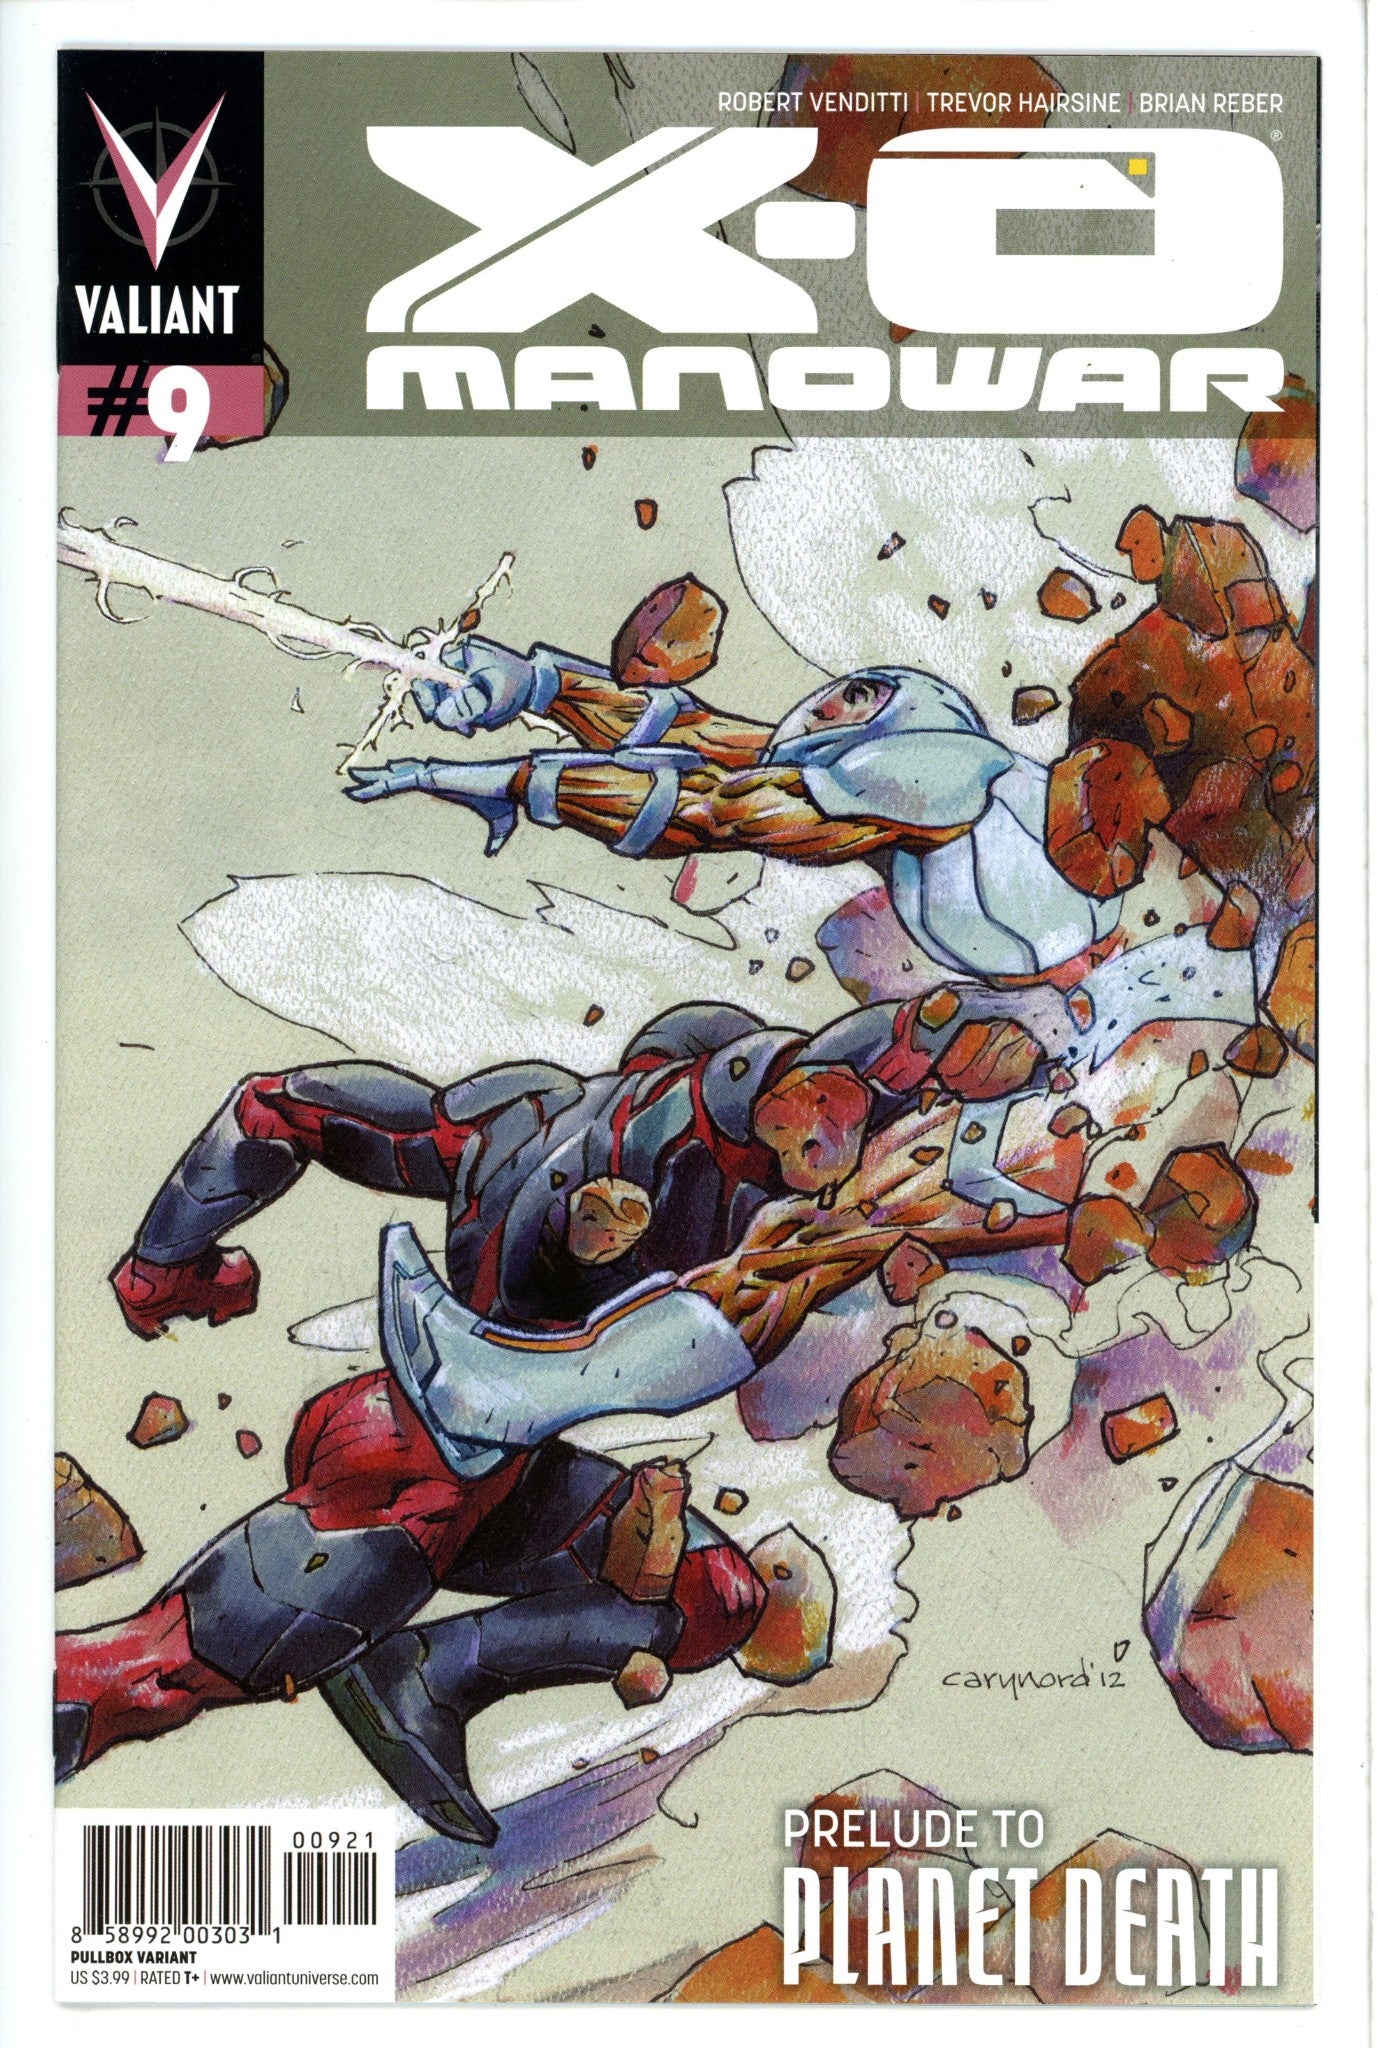 X-O Manowar Vol 3 9 Nord Variant-Valiant Entertainment-CaptCan Comics Inc